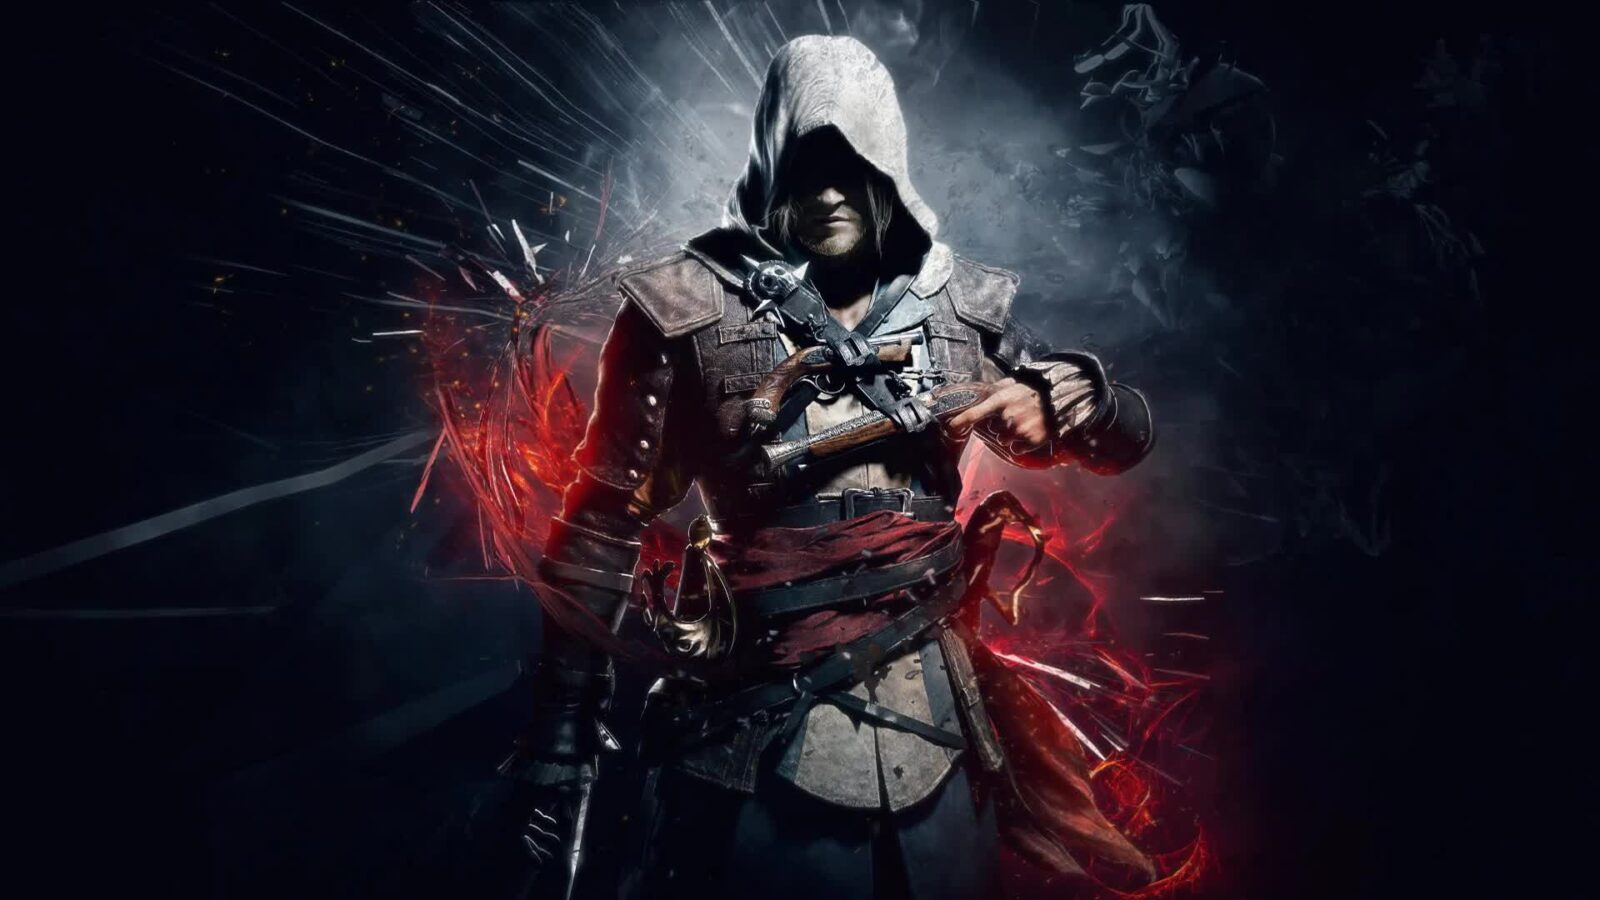 Assassins Creed IV Black Flag - Free Live Wallpaper - Live Desktop